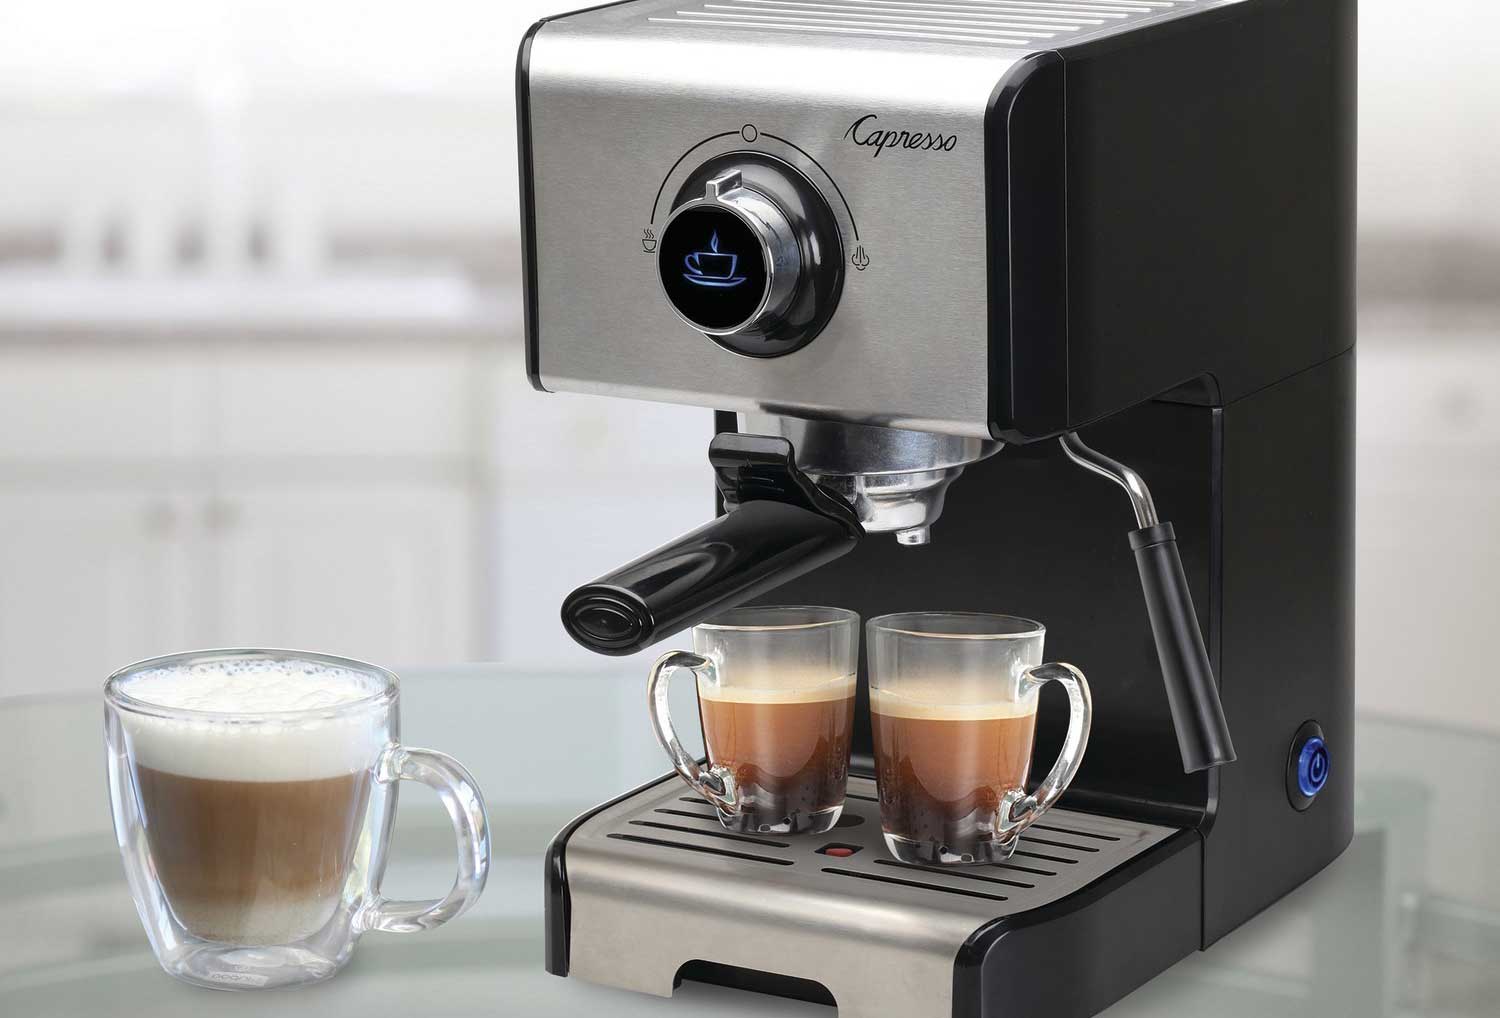 Capresso unveils EC300 machine for espressos and cappuccinos